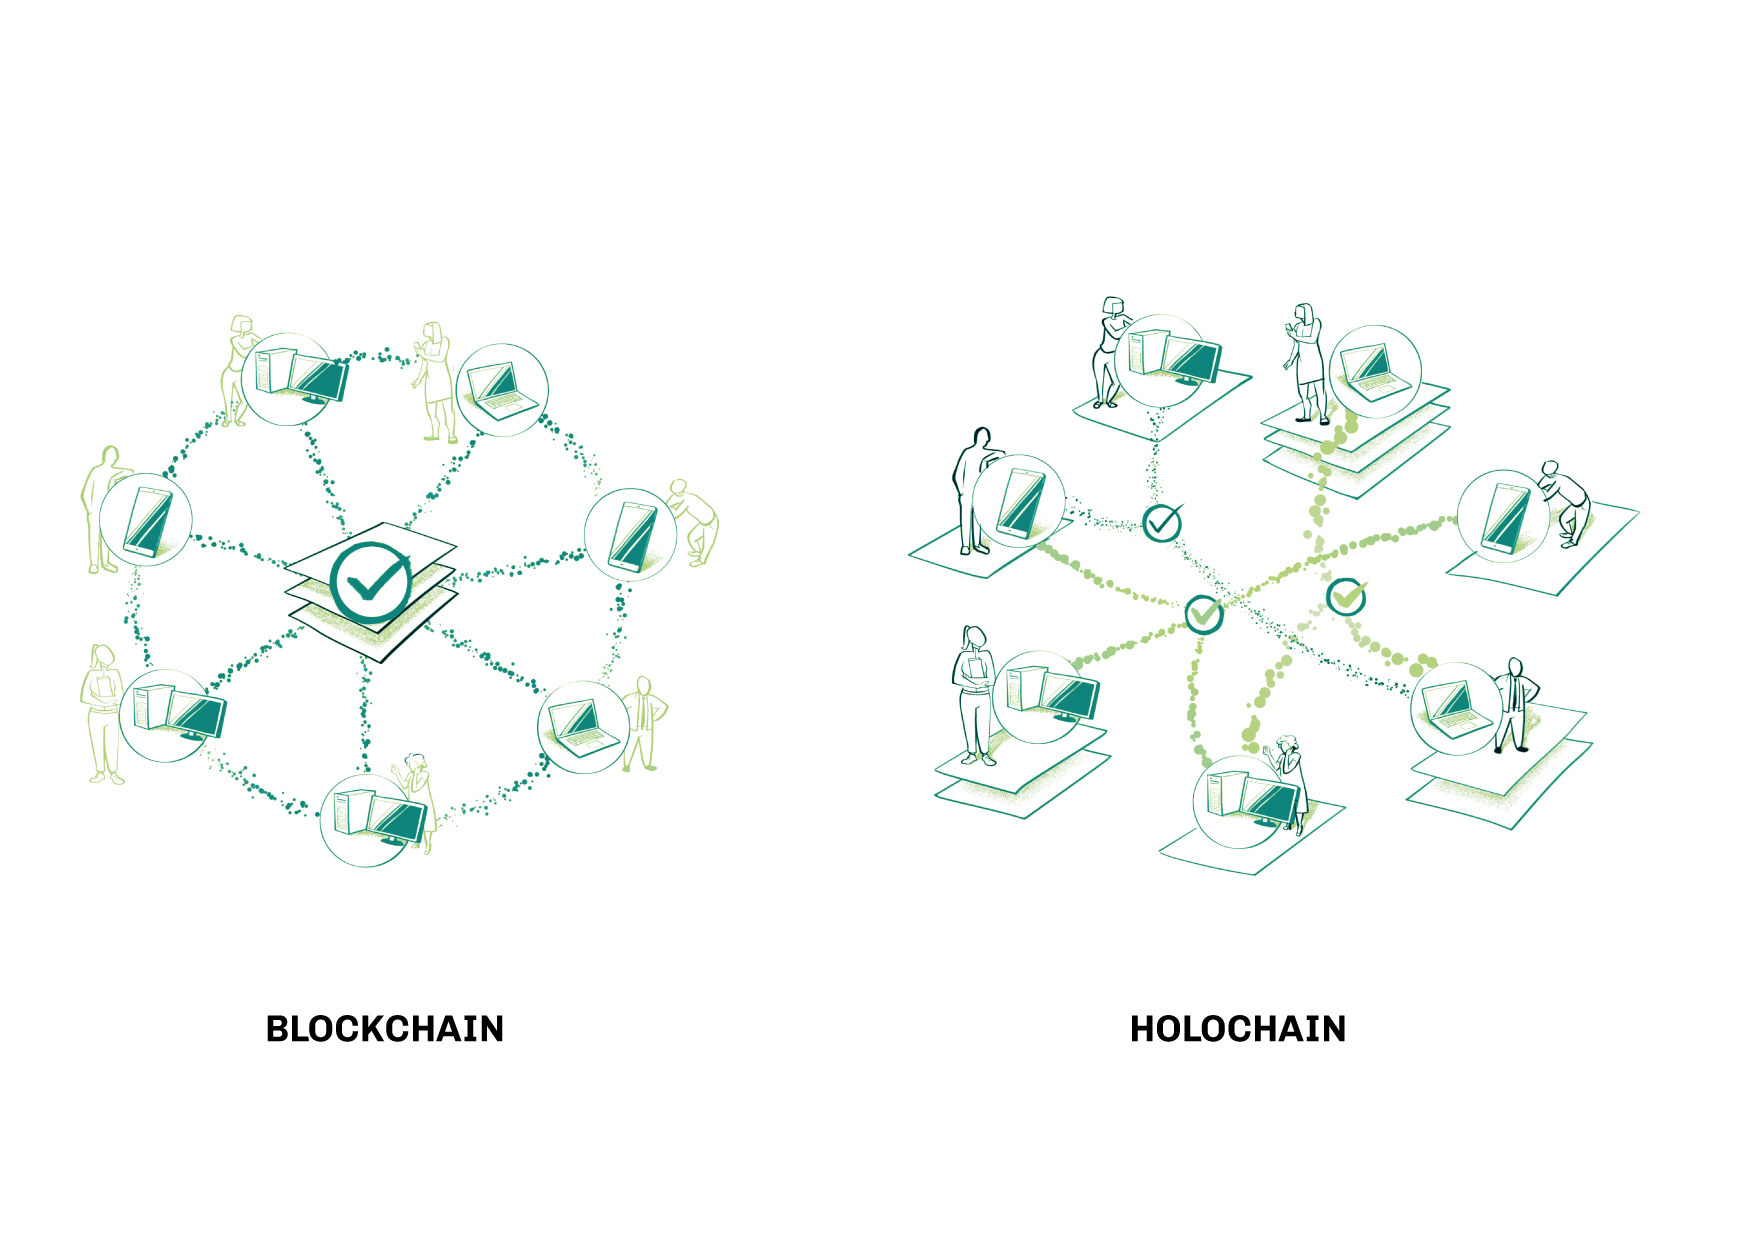 Holochain vs. Blockchain